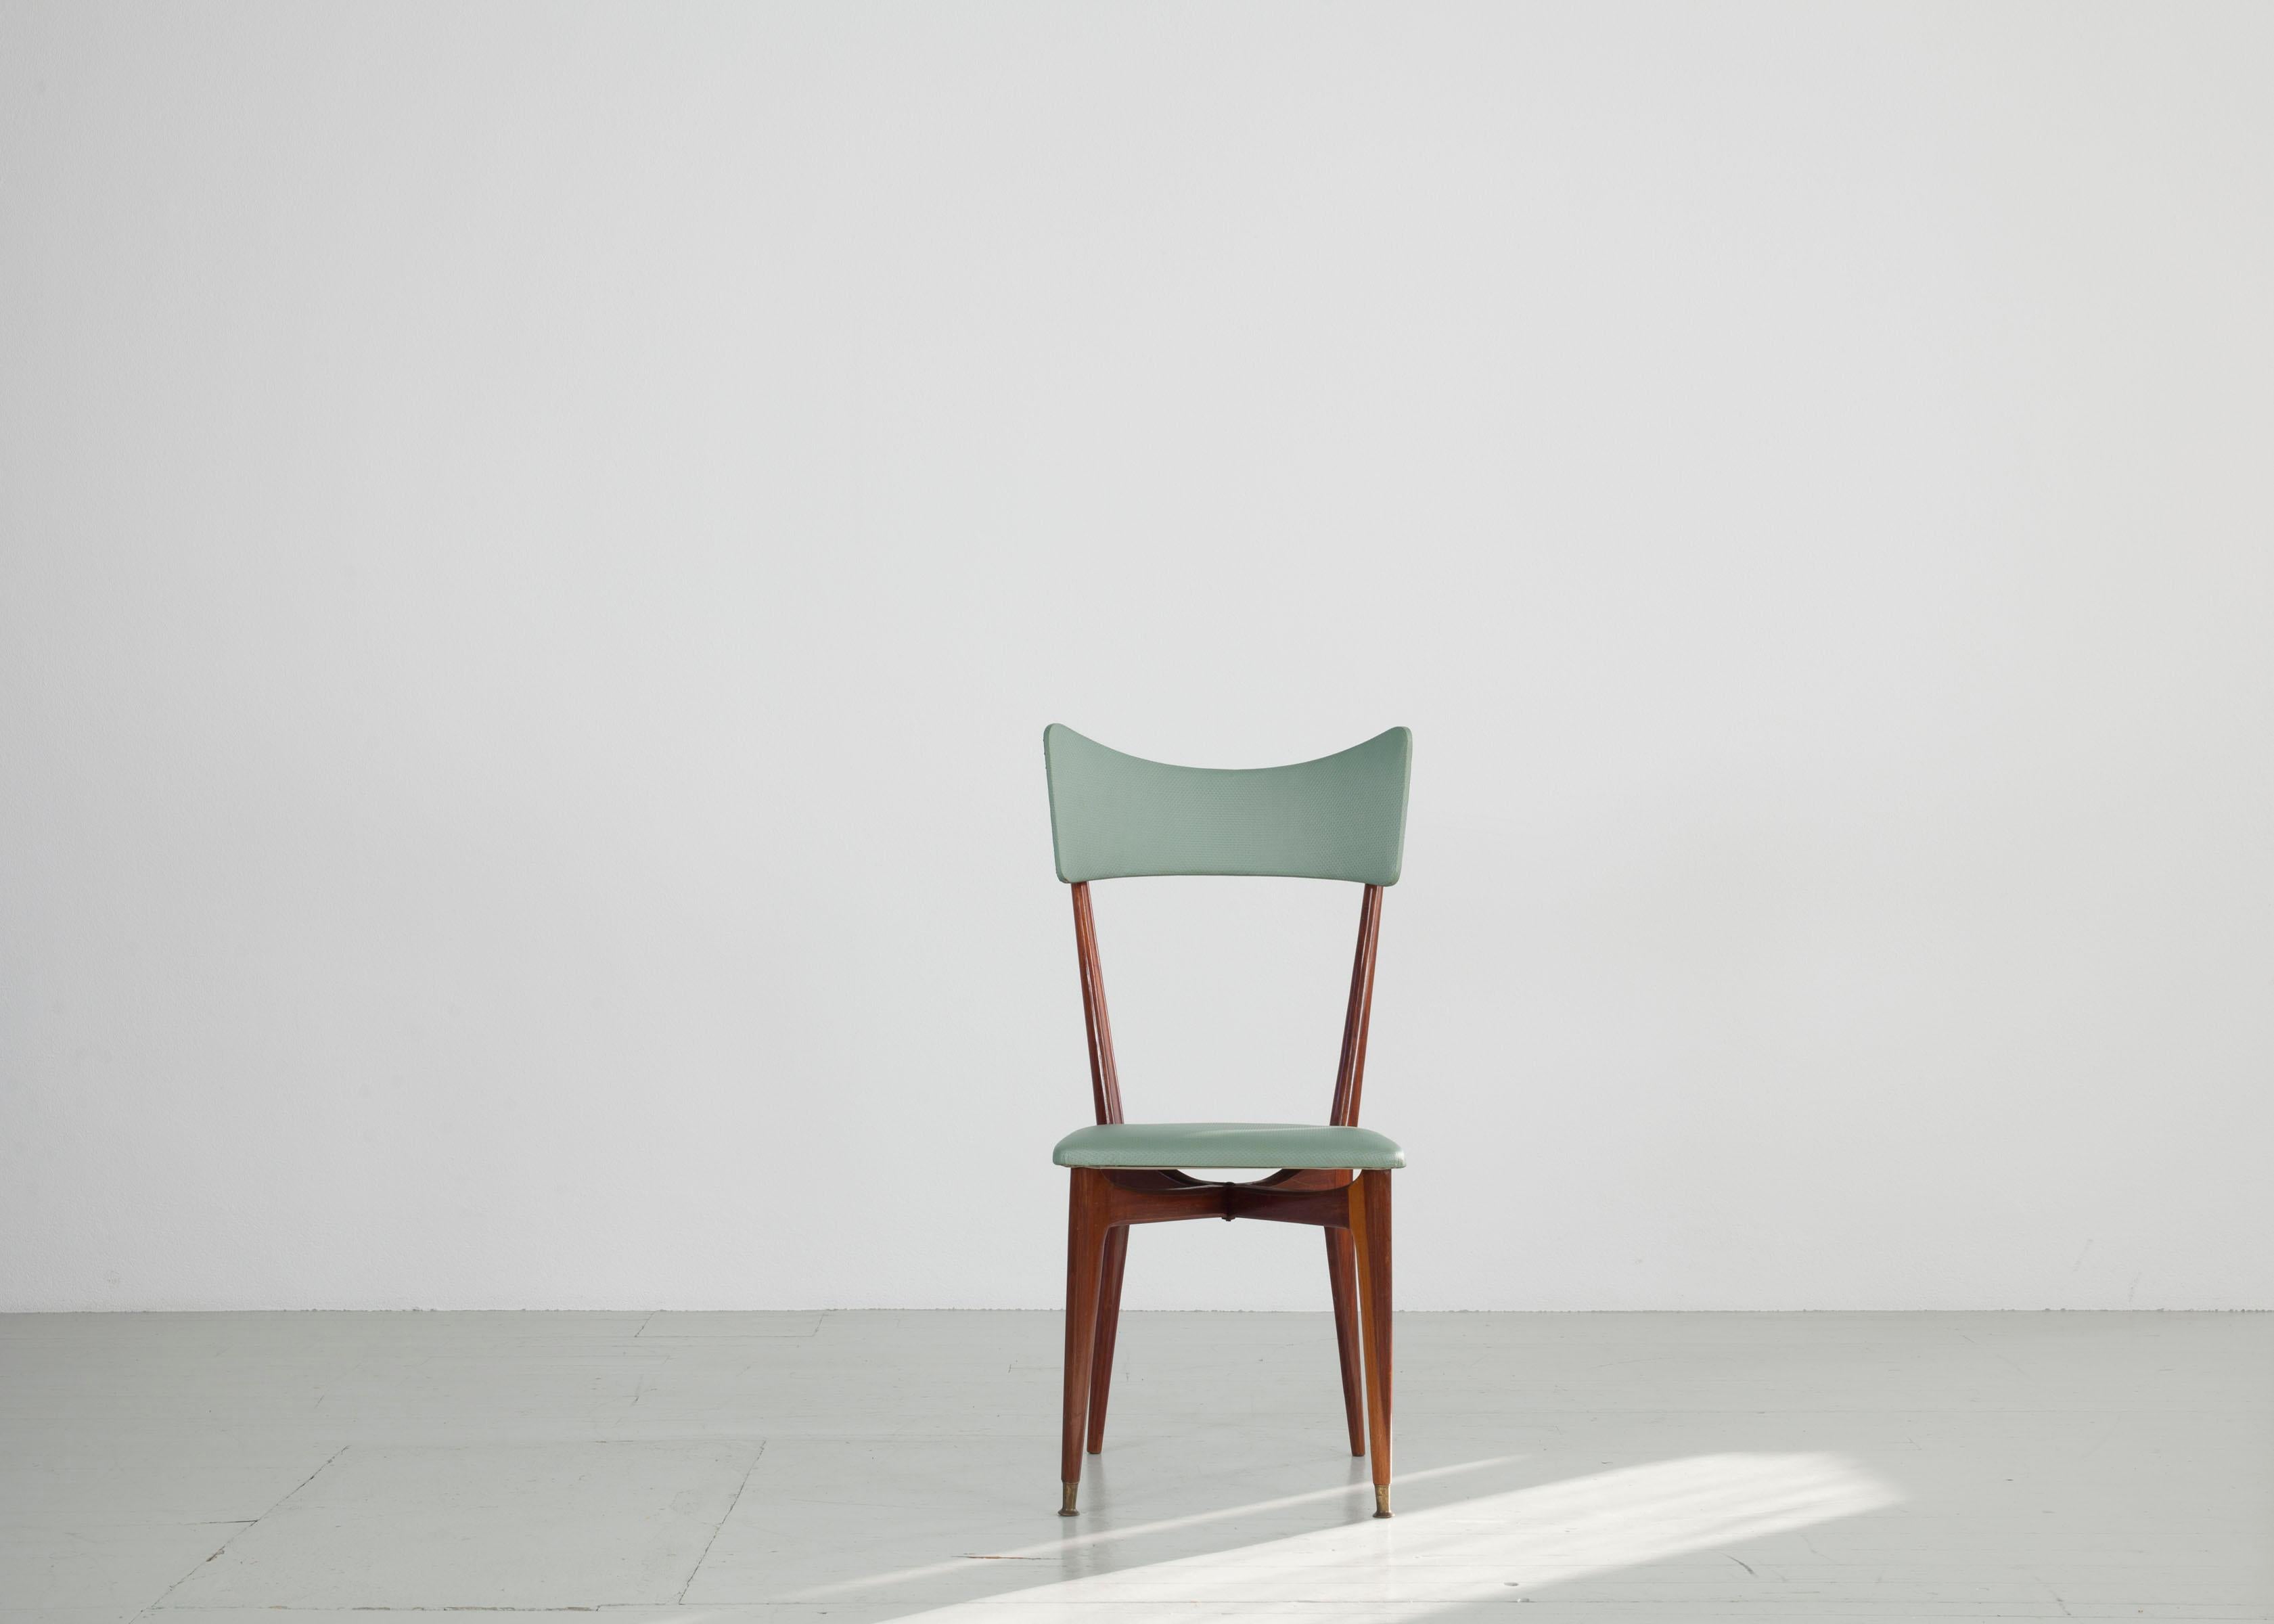 Dieses Set aus sechs Esszimmerstühlen ähnelt dem Entwurf von Ico Parisi und ist in seinem ursprünglichen Zustand. Das geradlinige Gestell mit verjüngten Enden ist aus lackiertem Teakholz gefertigt. Die Sitze und Rückenlehnen sind mit mintfarbenem